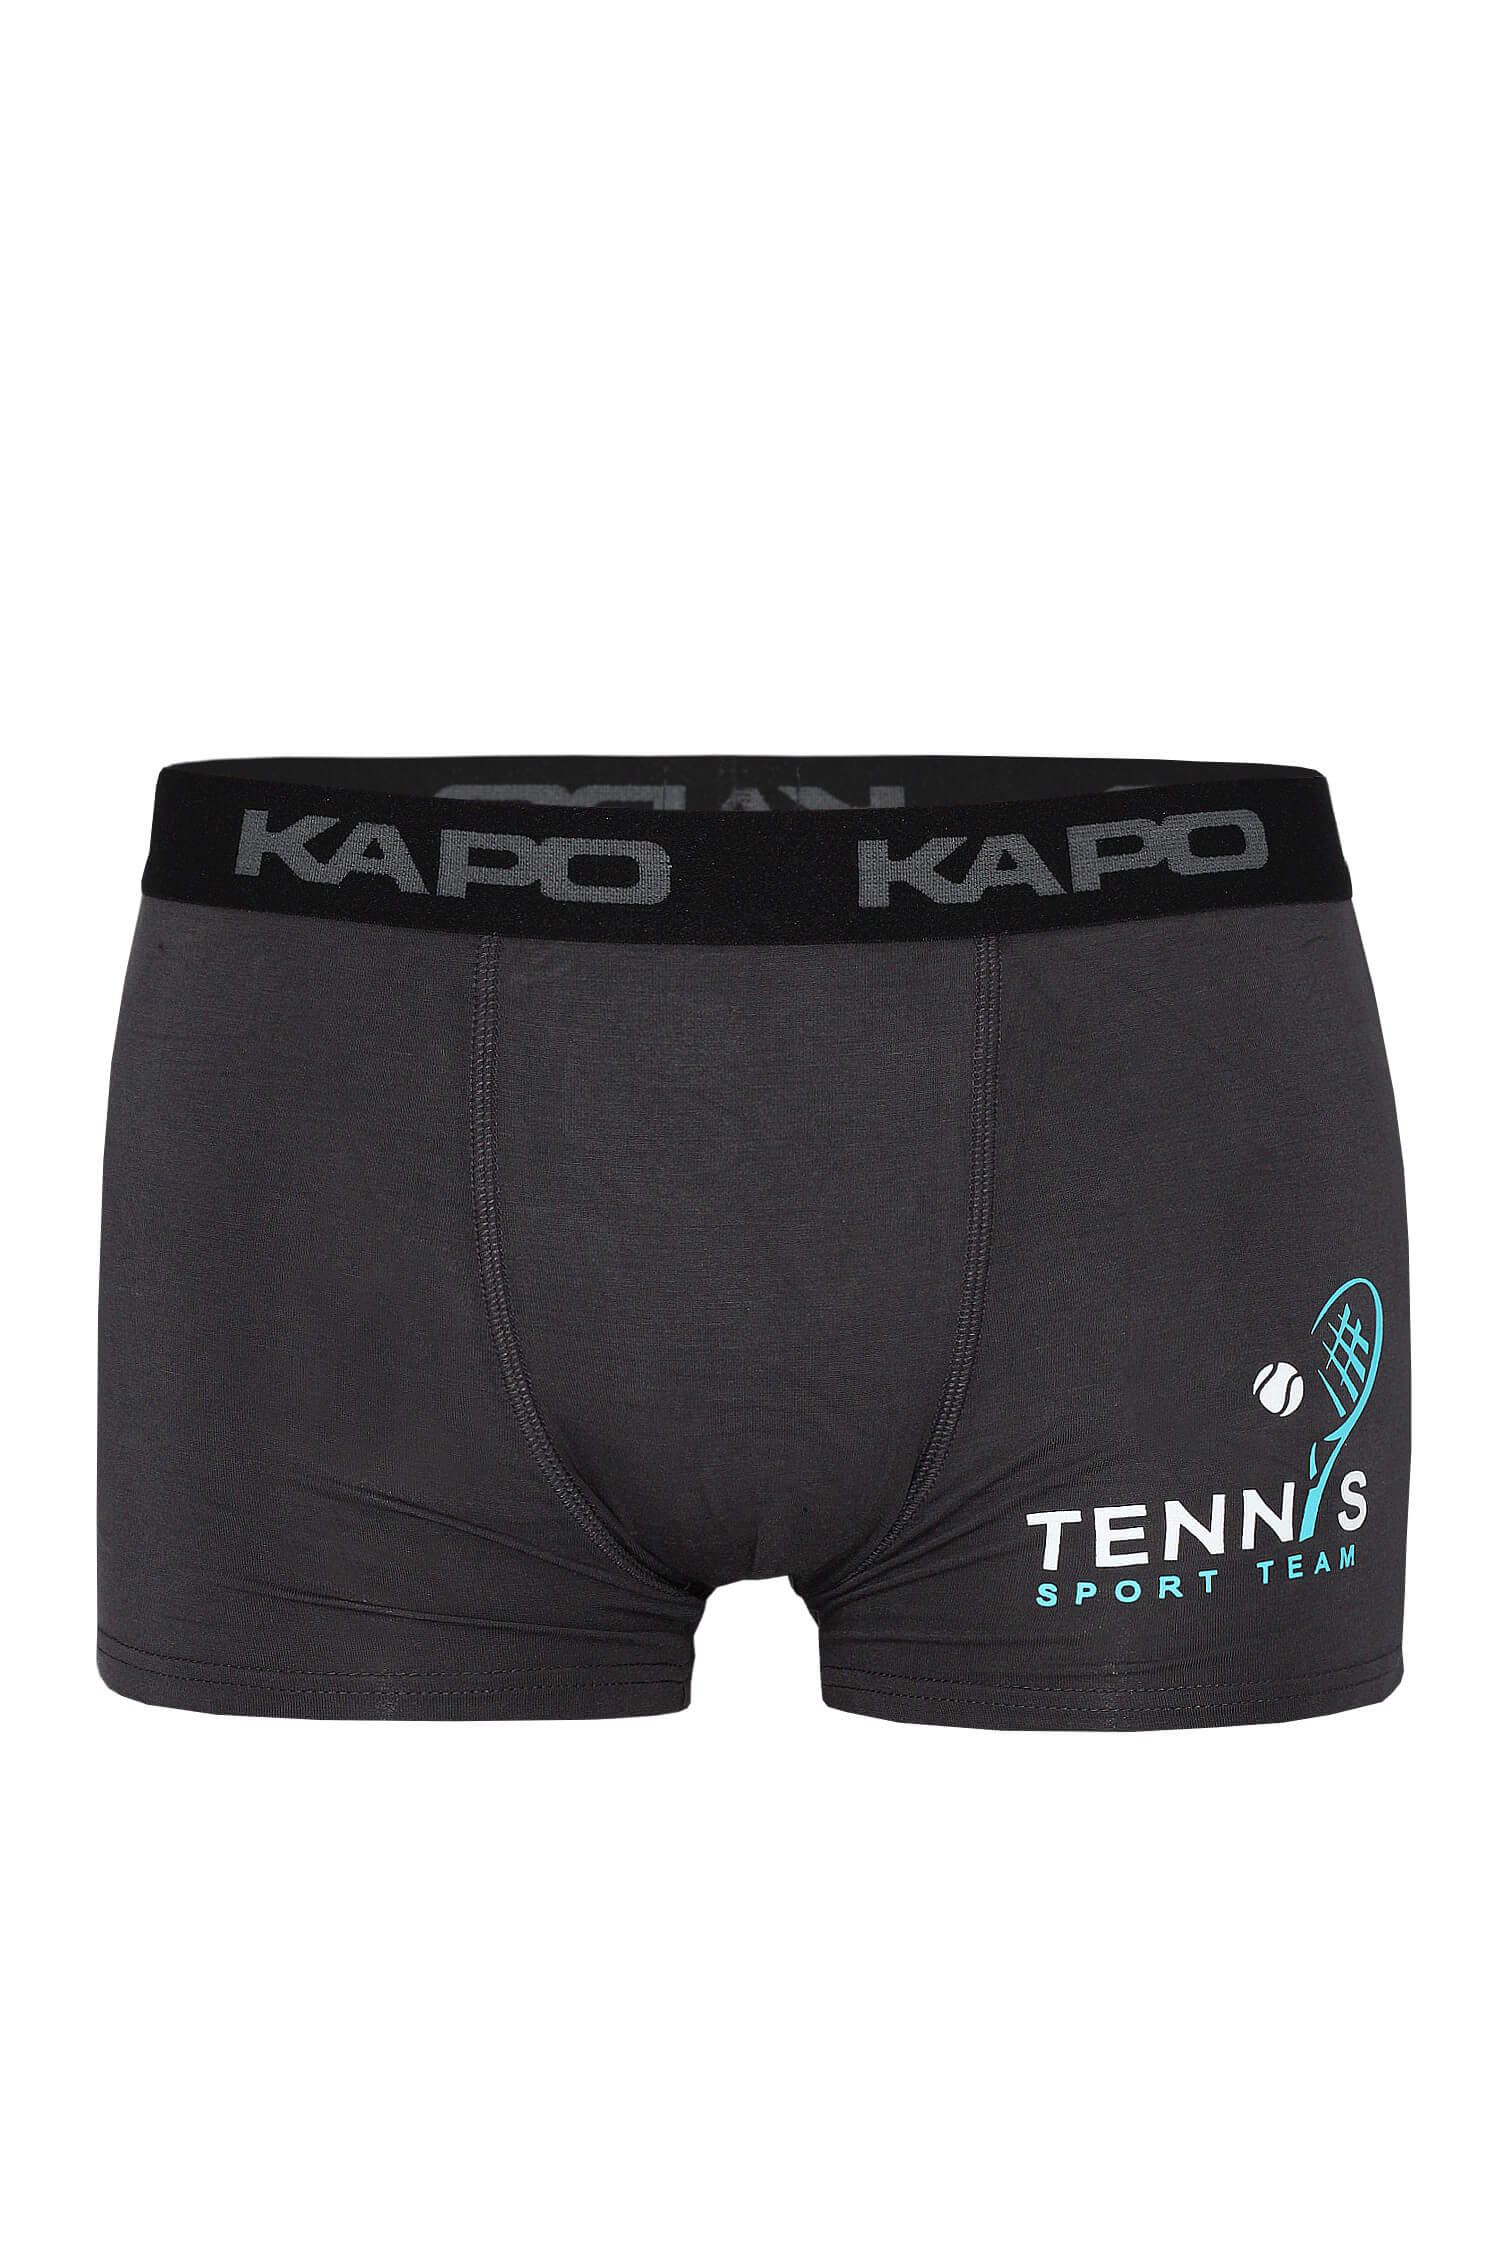 Rafael Kapo tenis boxerky XL tmavě šedá